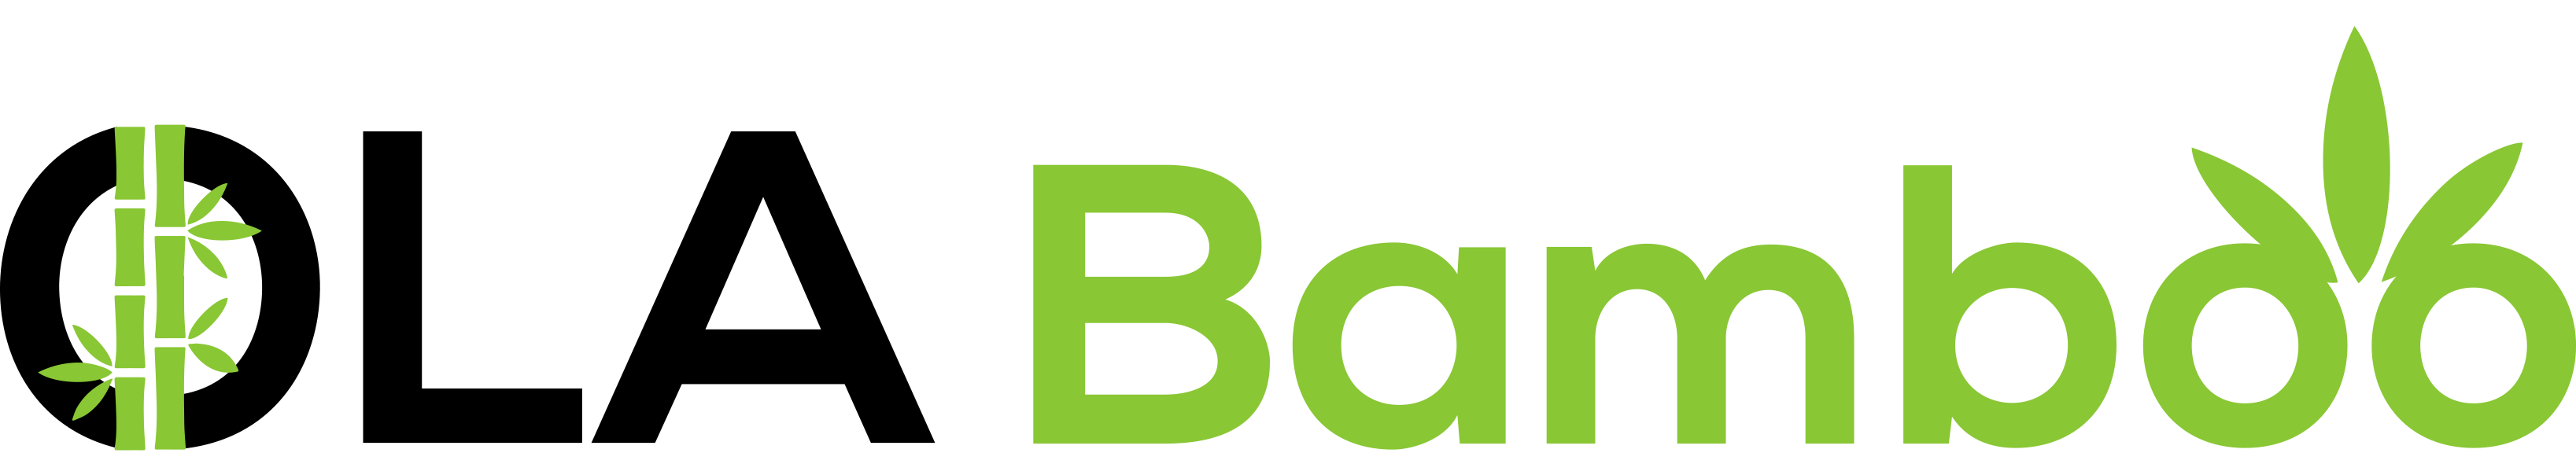 OlaBamboo_Logo